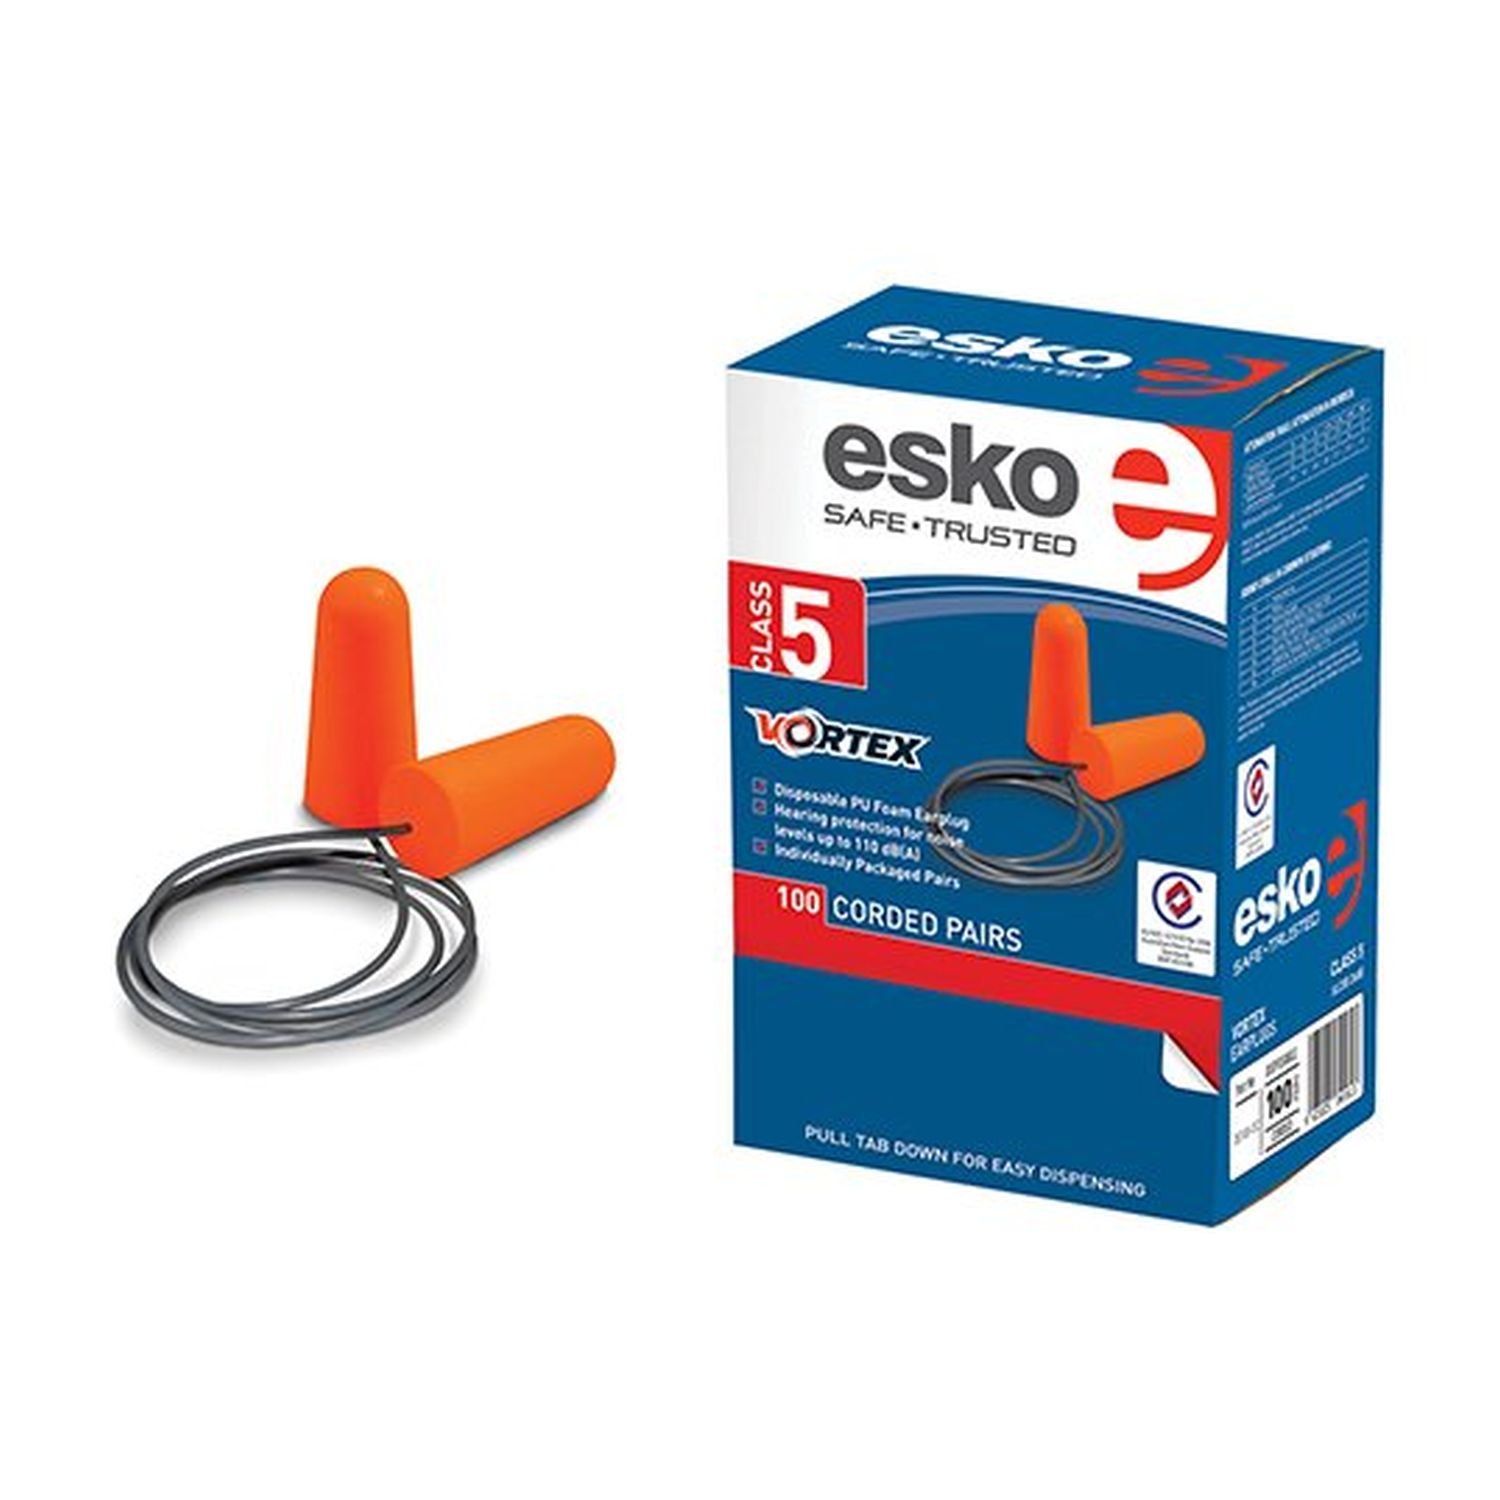 Esko Vortex Corded Earplugs In Dispenser Box 100 Pairs